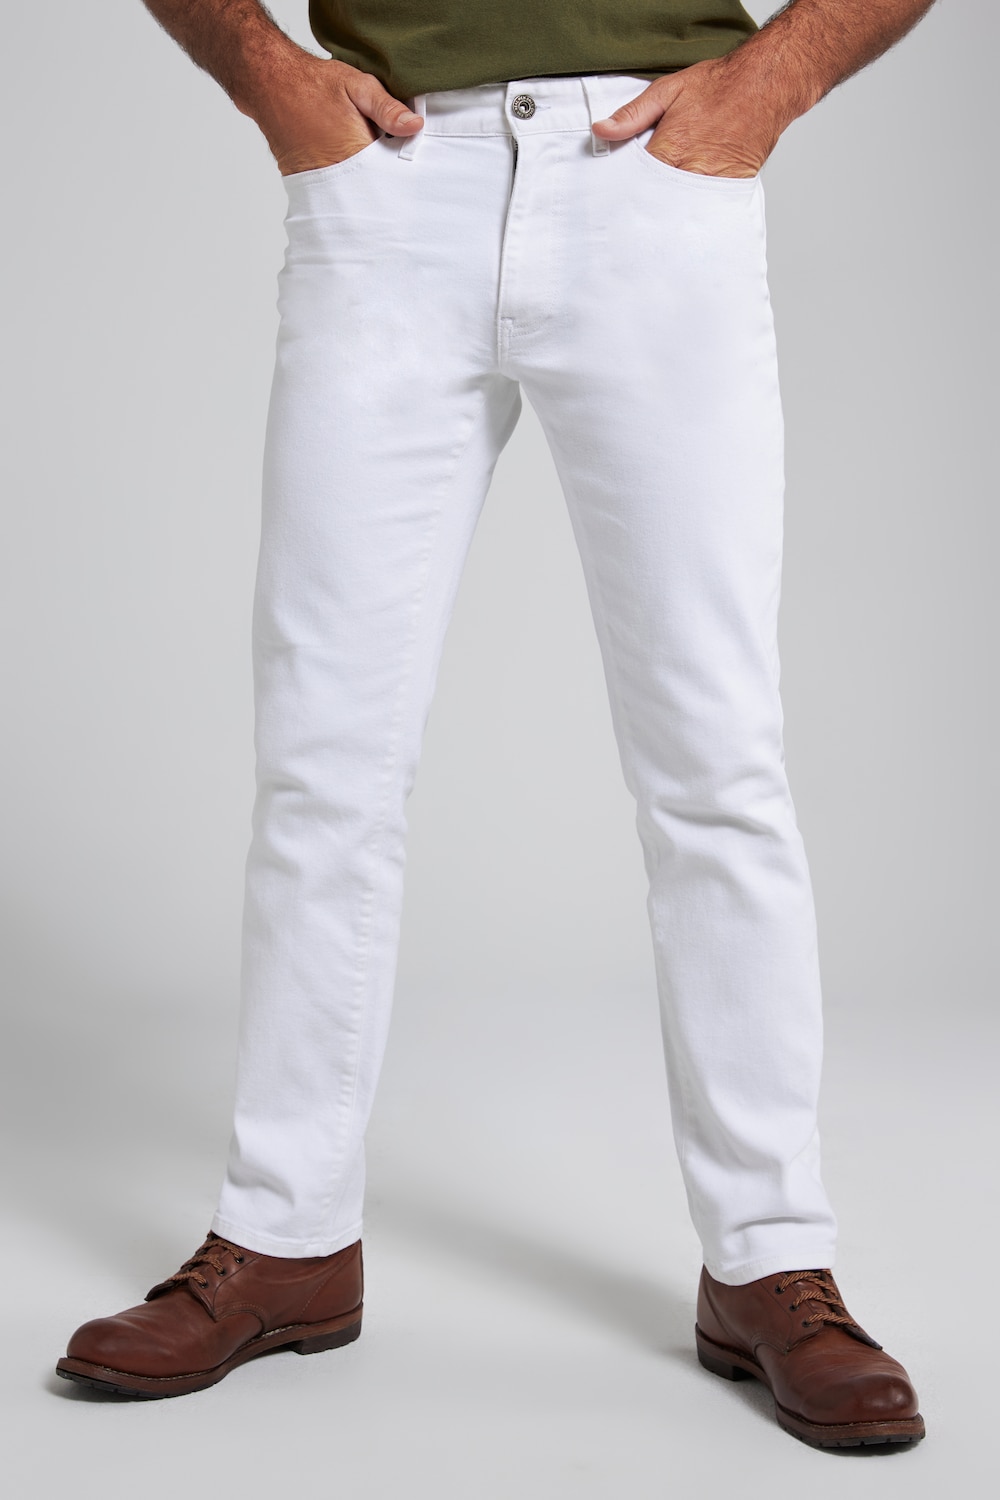 Grote Maten jeans, Heren, wit, Maat: 66, Katoen, JP1880